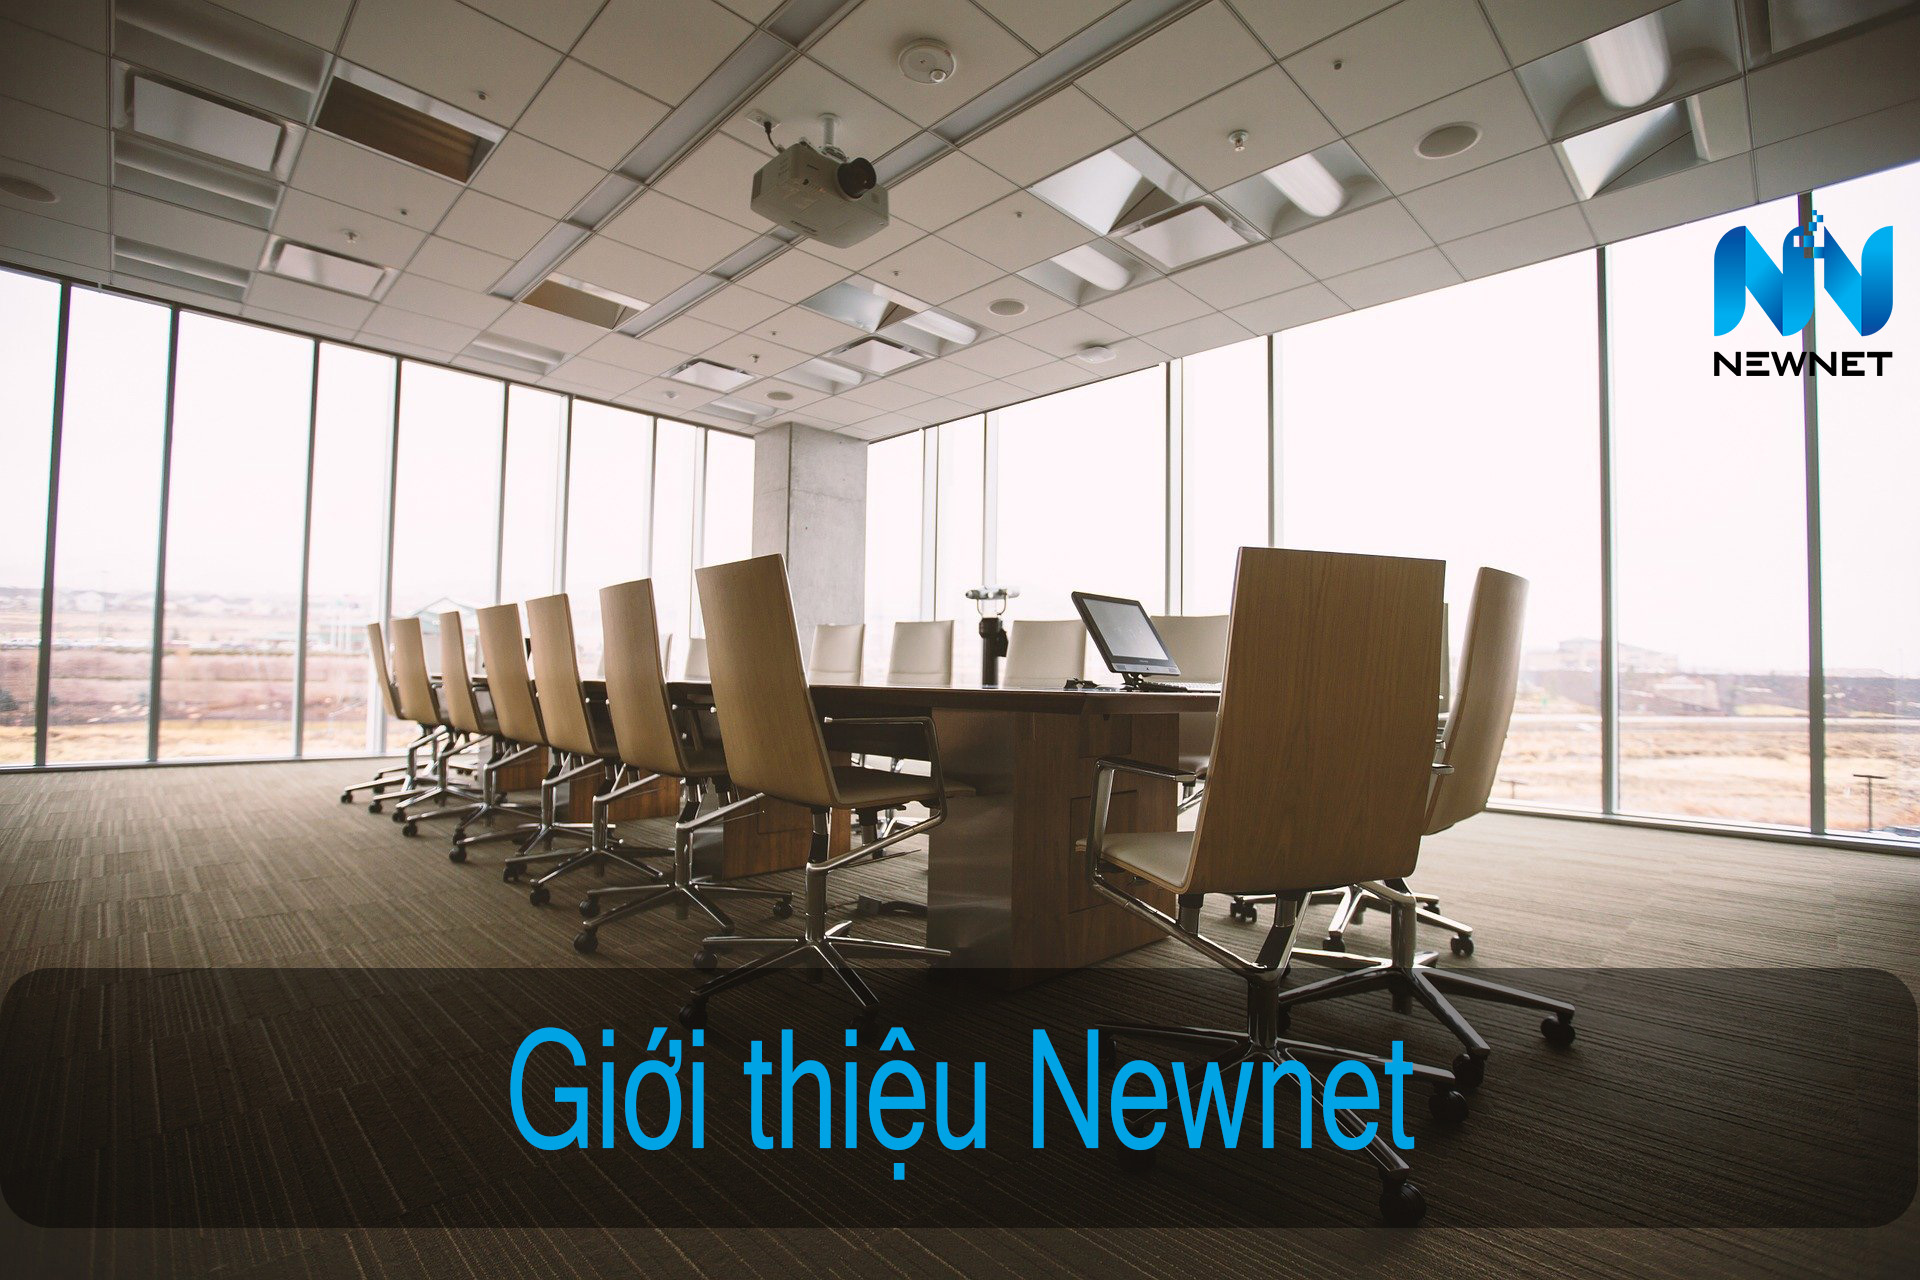 Giới thiệu công ty Newnet